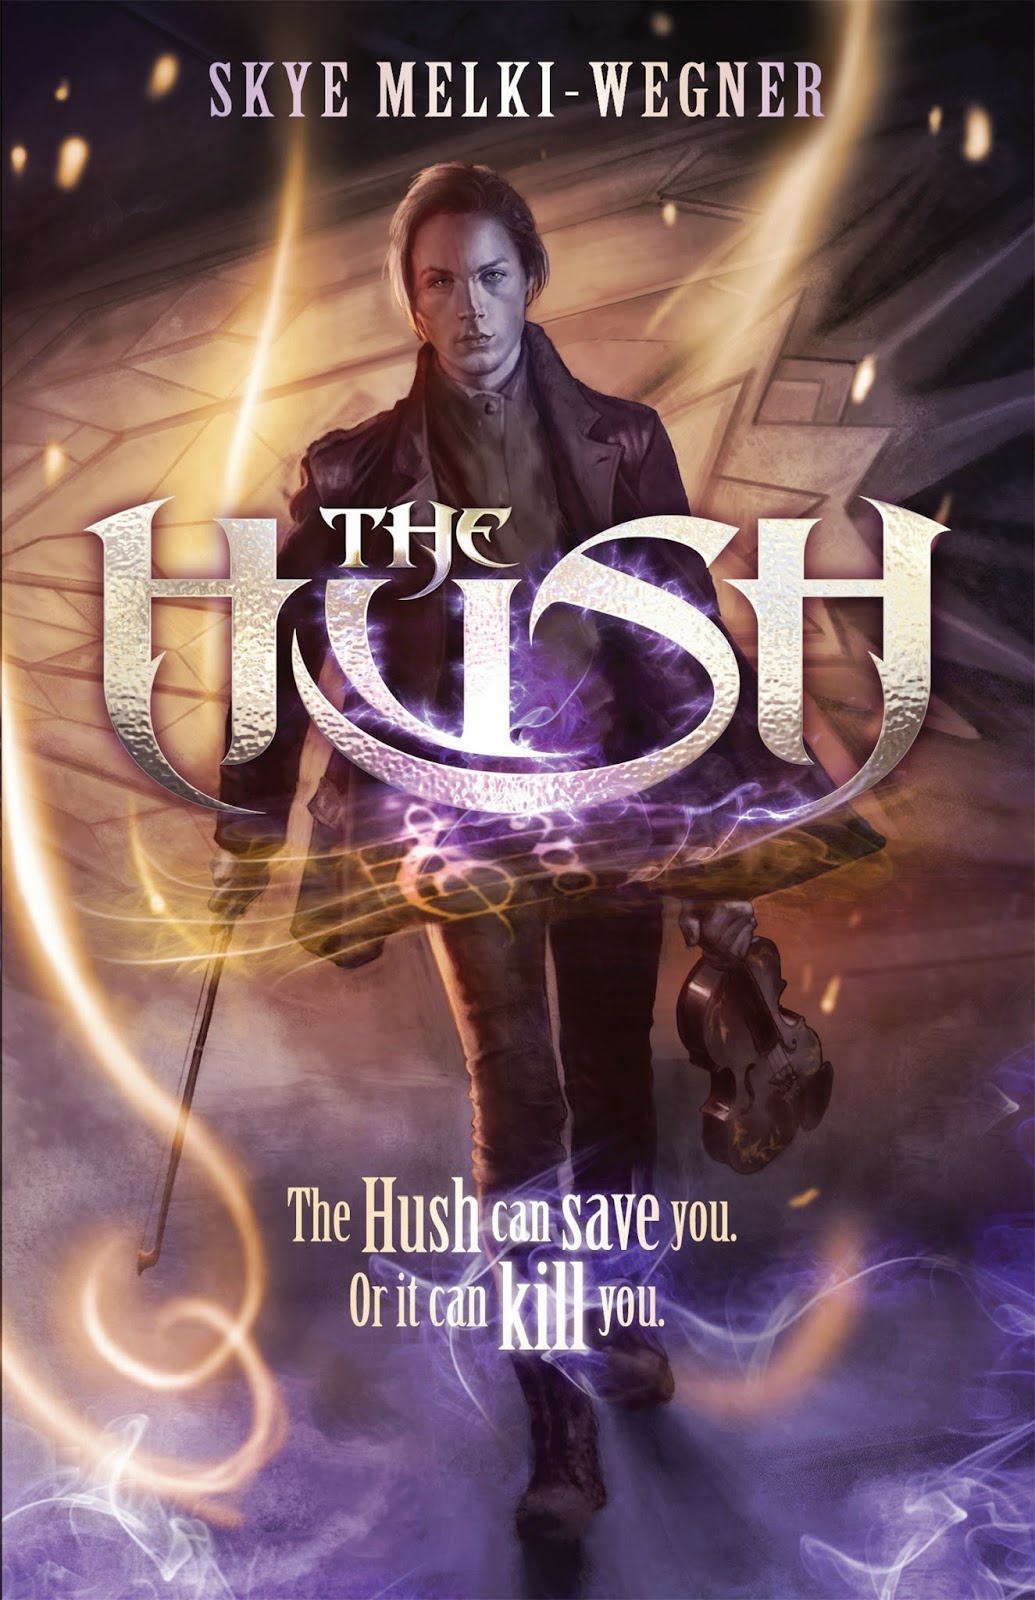 The Hush Skye Melki-Wegner book cover